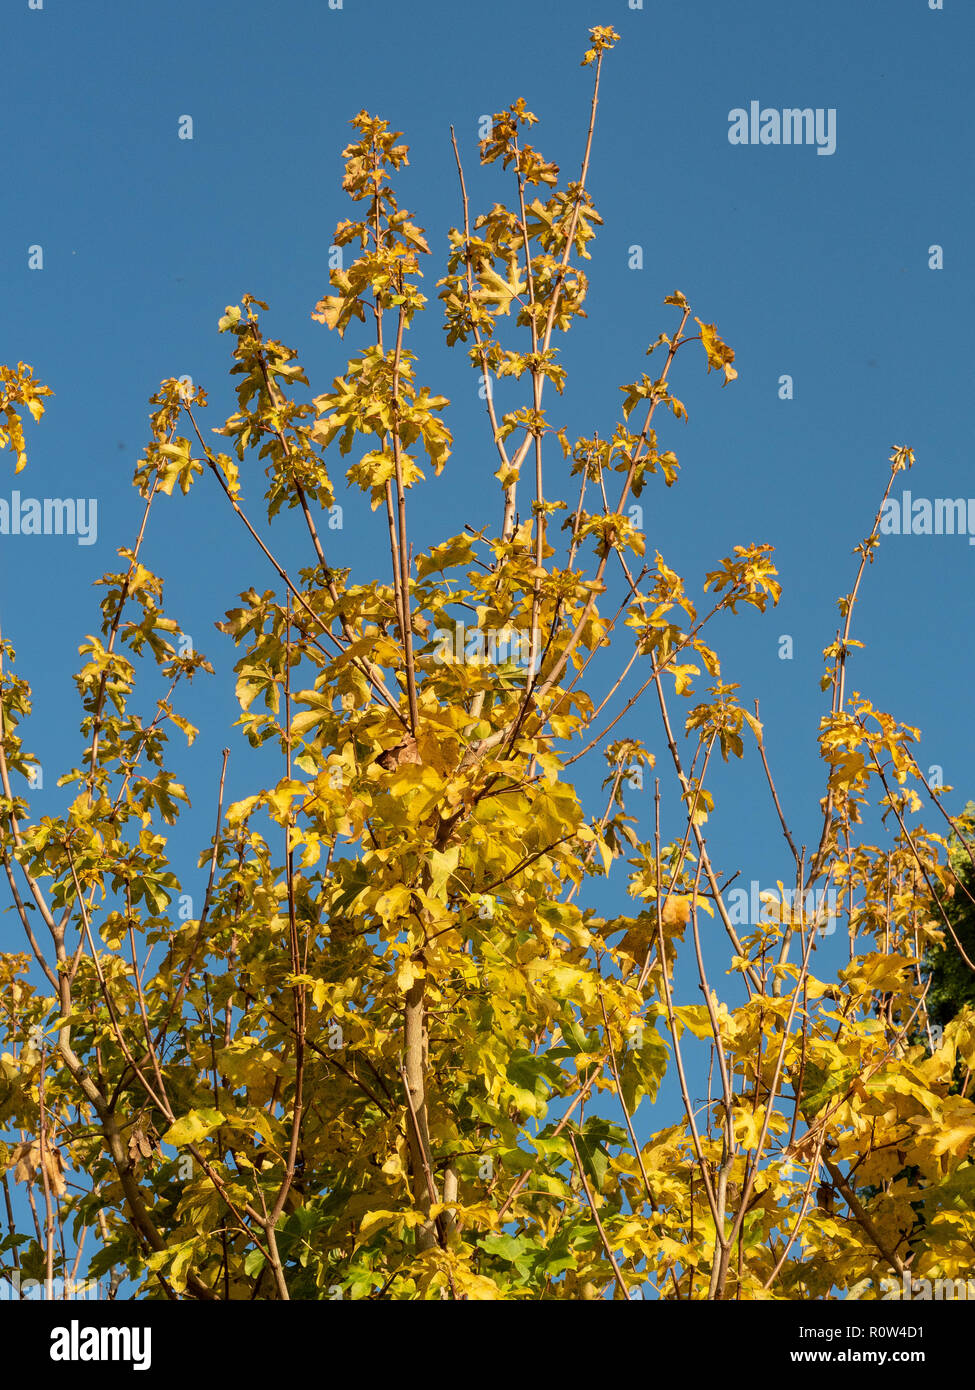 Le feuillage doré du champ maple Acer campestre brillants dans la lumière du soleil d'automne contre un ciel bleu clair Banque D'Images